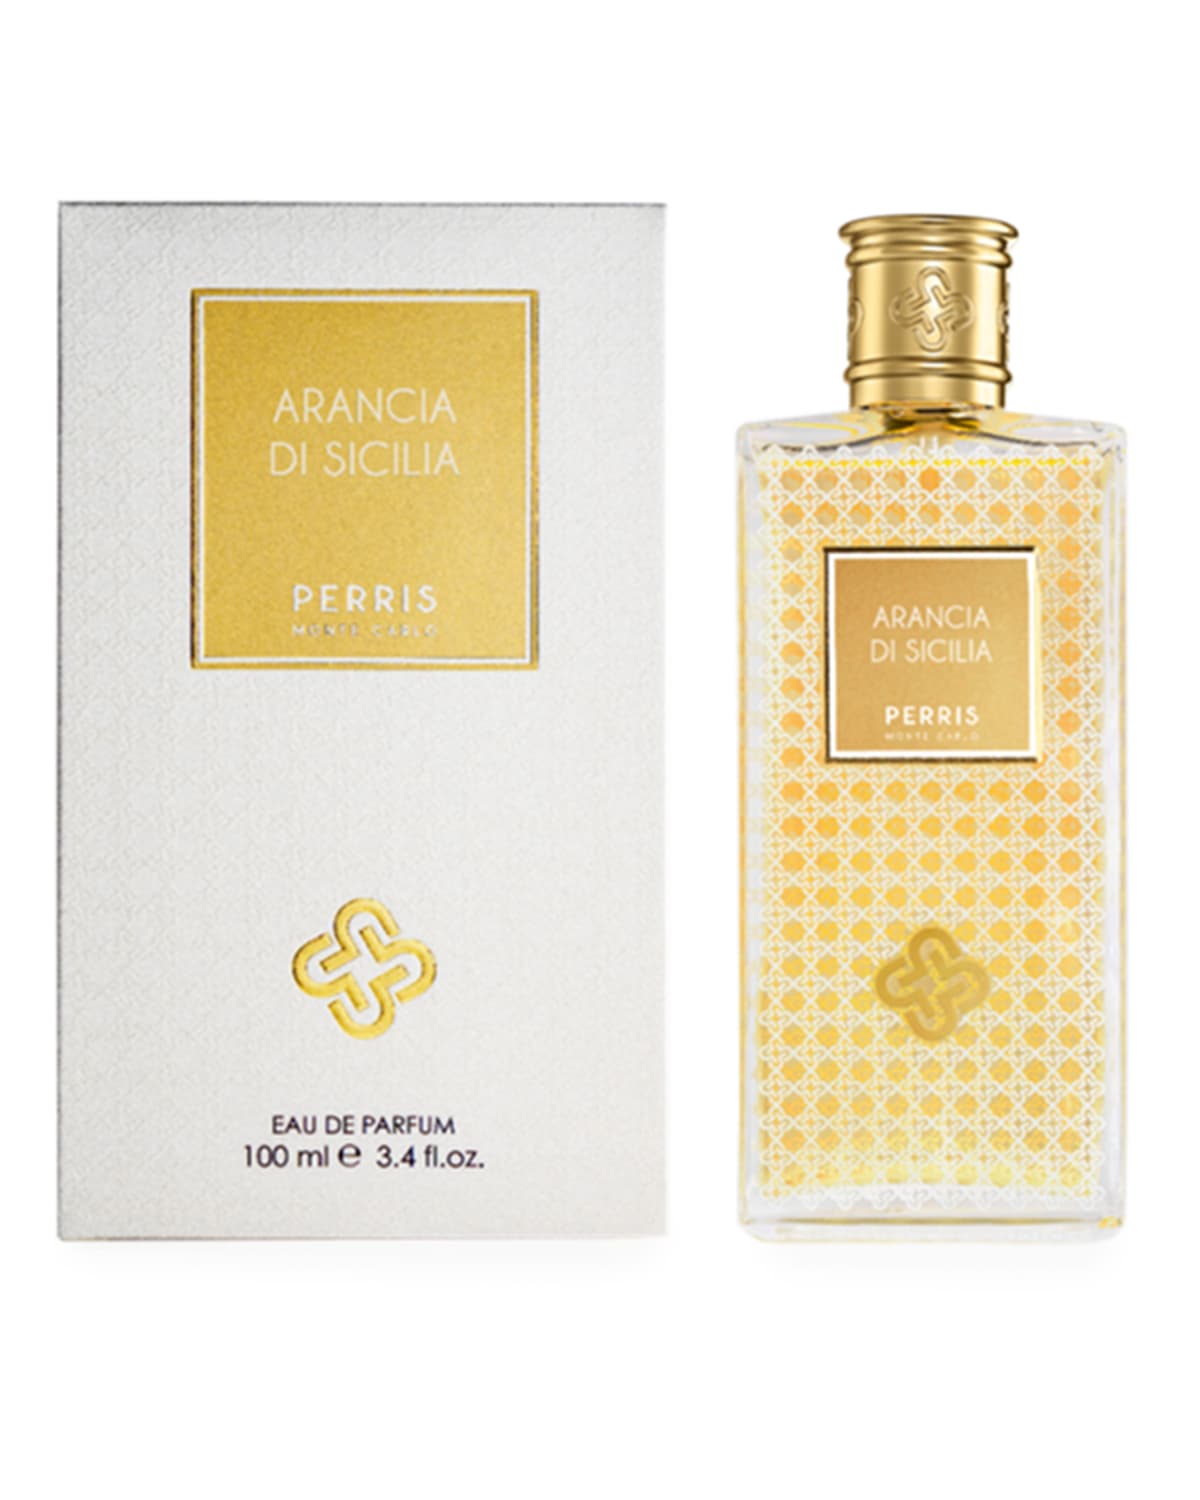 Perris Monte Carlo 3.4 oz. Arancia Di Sicilia Eau de Parfum